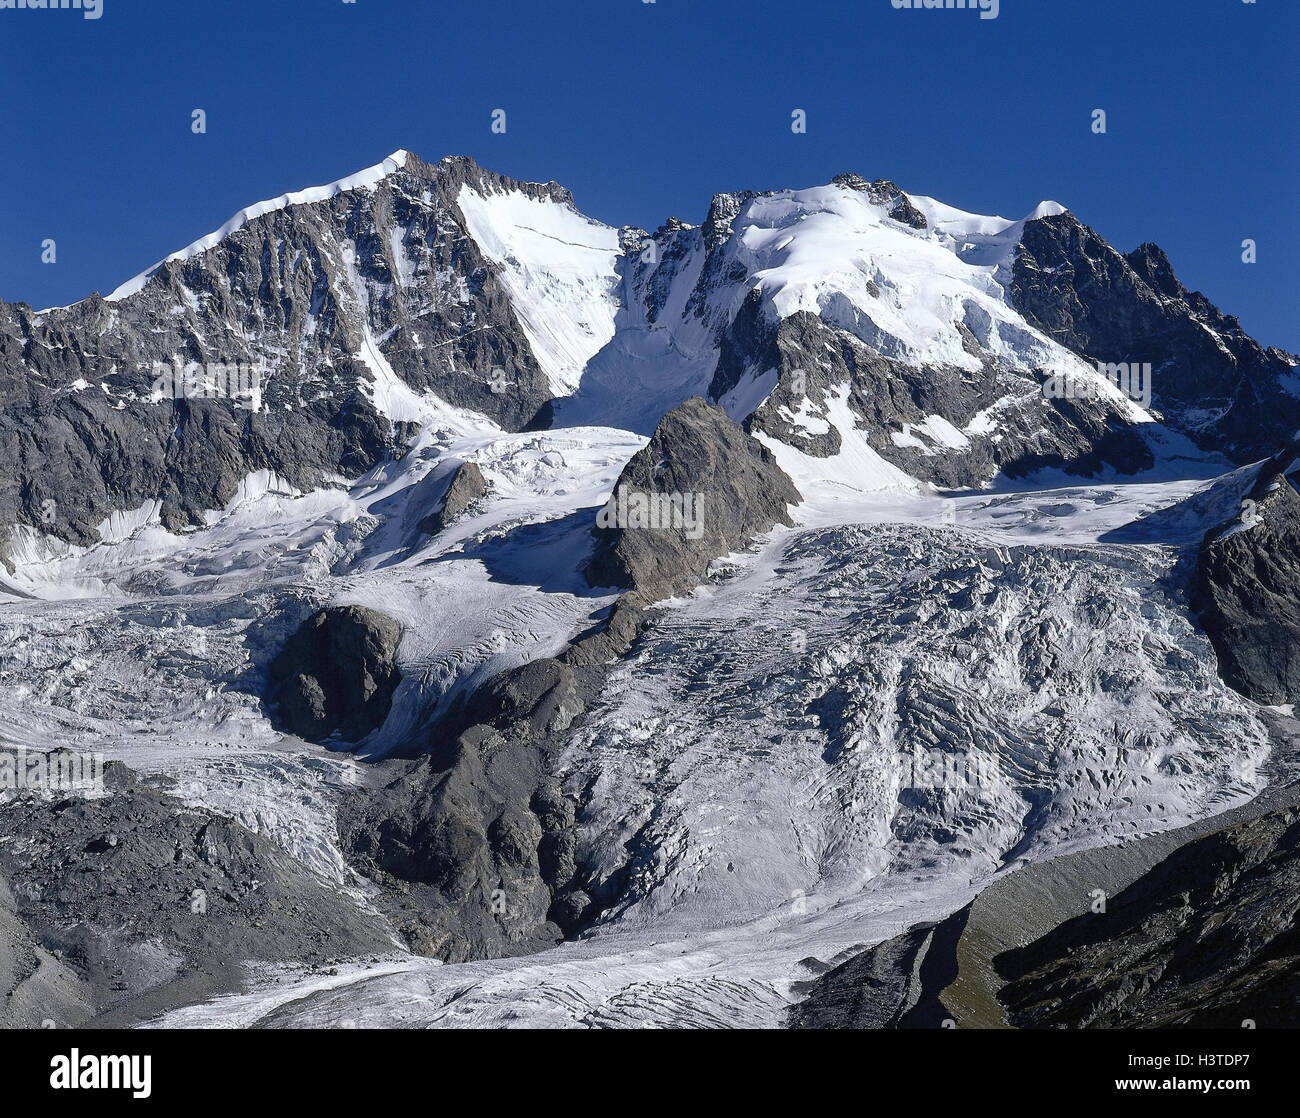 La Suisse, Grisons, Engadine, le Piz Bernina, 4049 m, le Piz Scercen, 3971 m montagne, paysage de montagne, montagnes, neige, glacier, région montagneuse Banque D'Images